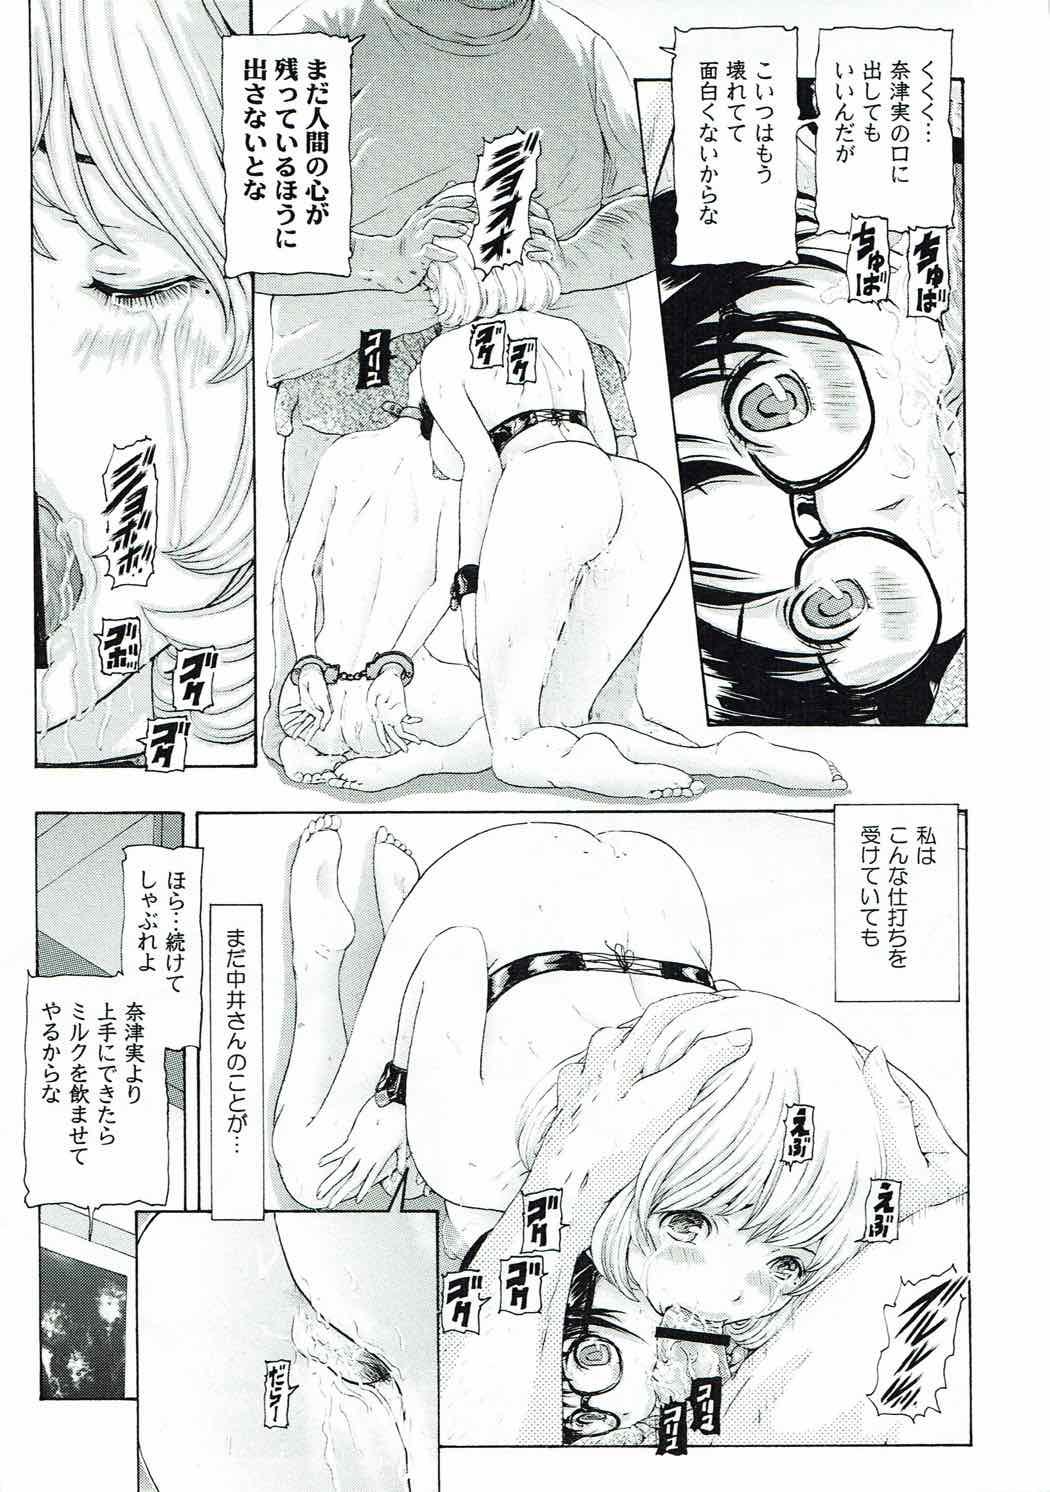 [け ゚ぴけ ゚ぴ(ぬャカな)] MANKOKU漫画家(とアシスタント)残酷物語 (バクマン。) 9